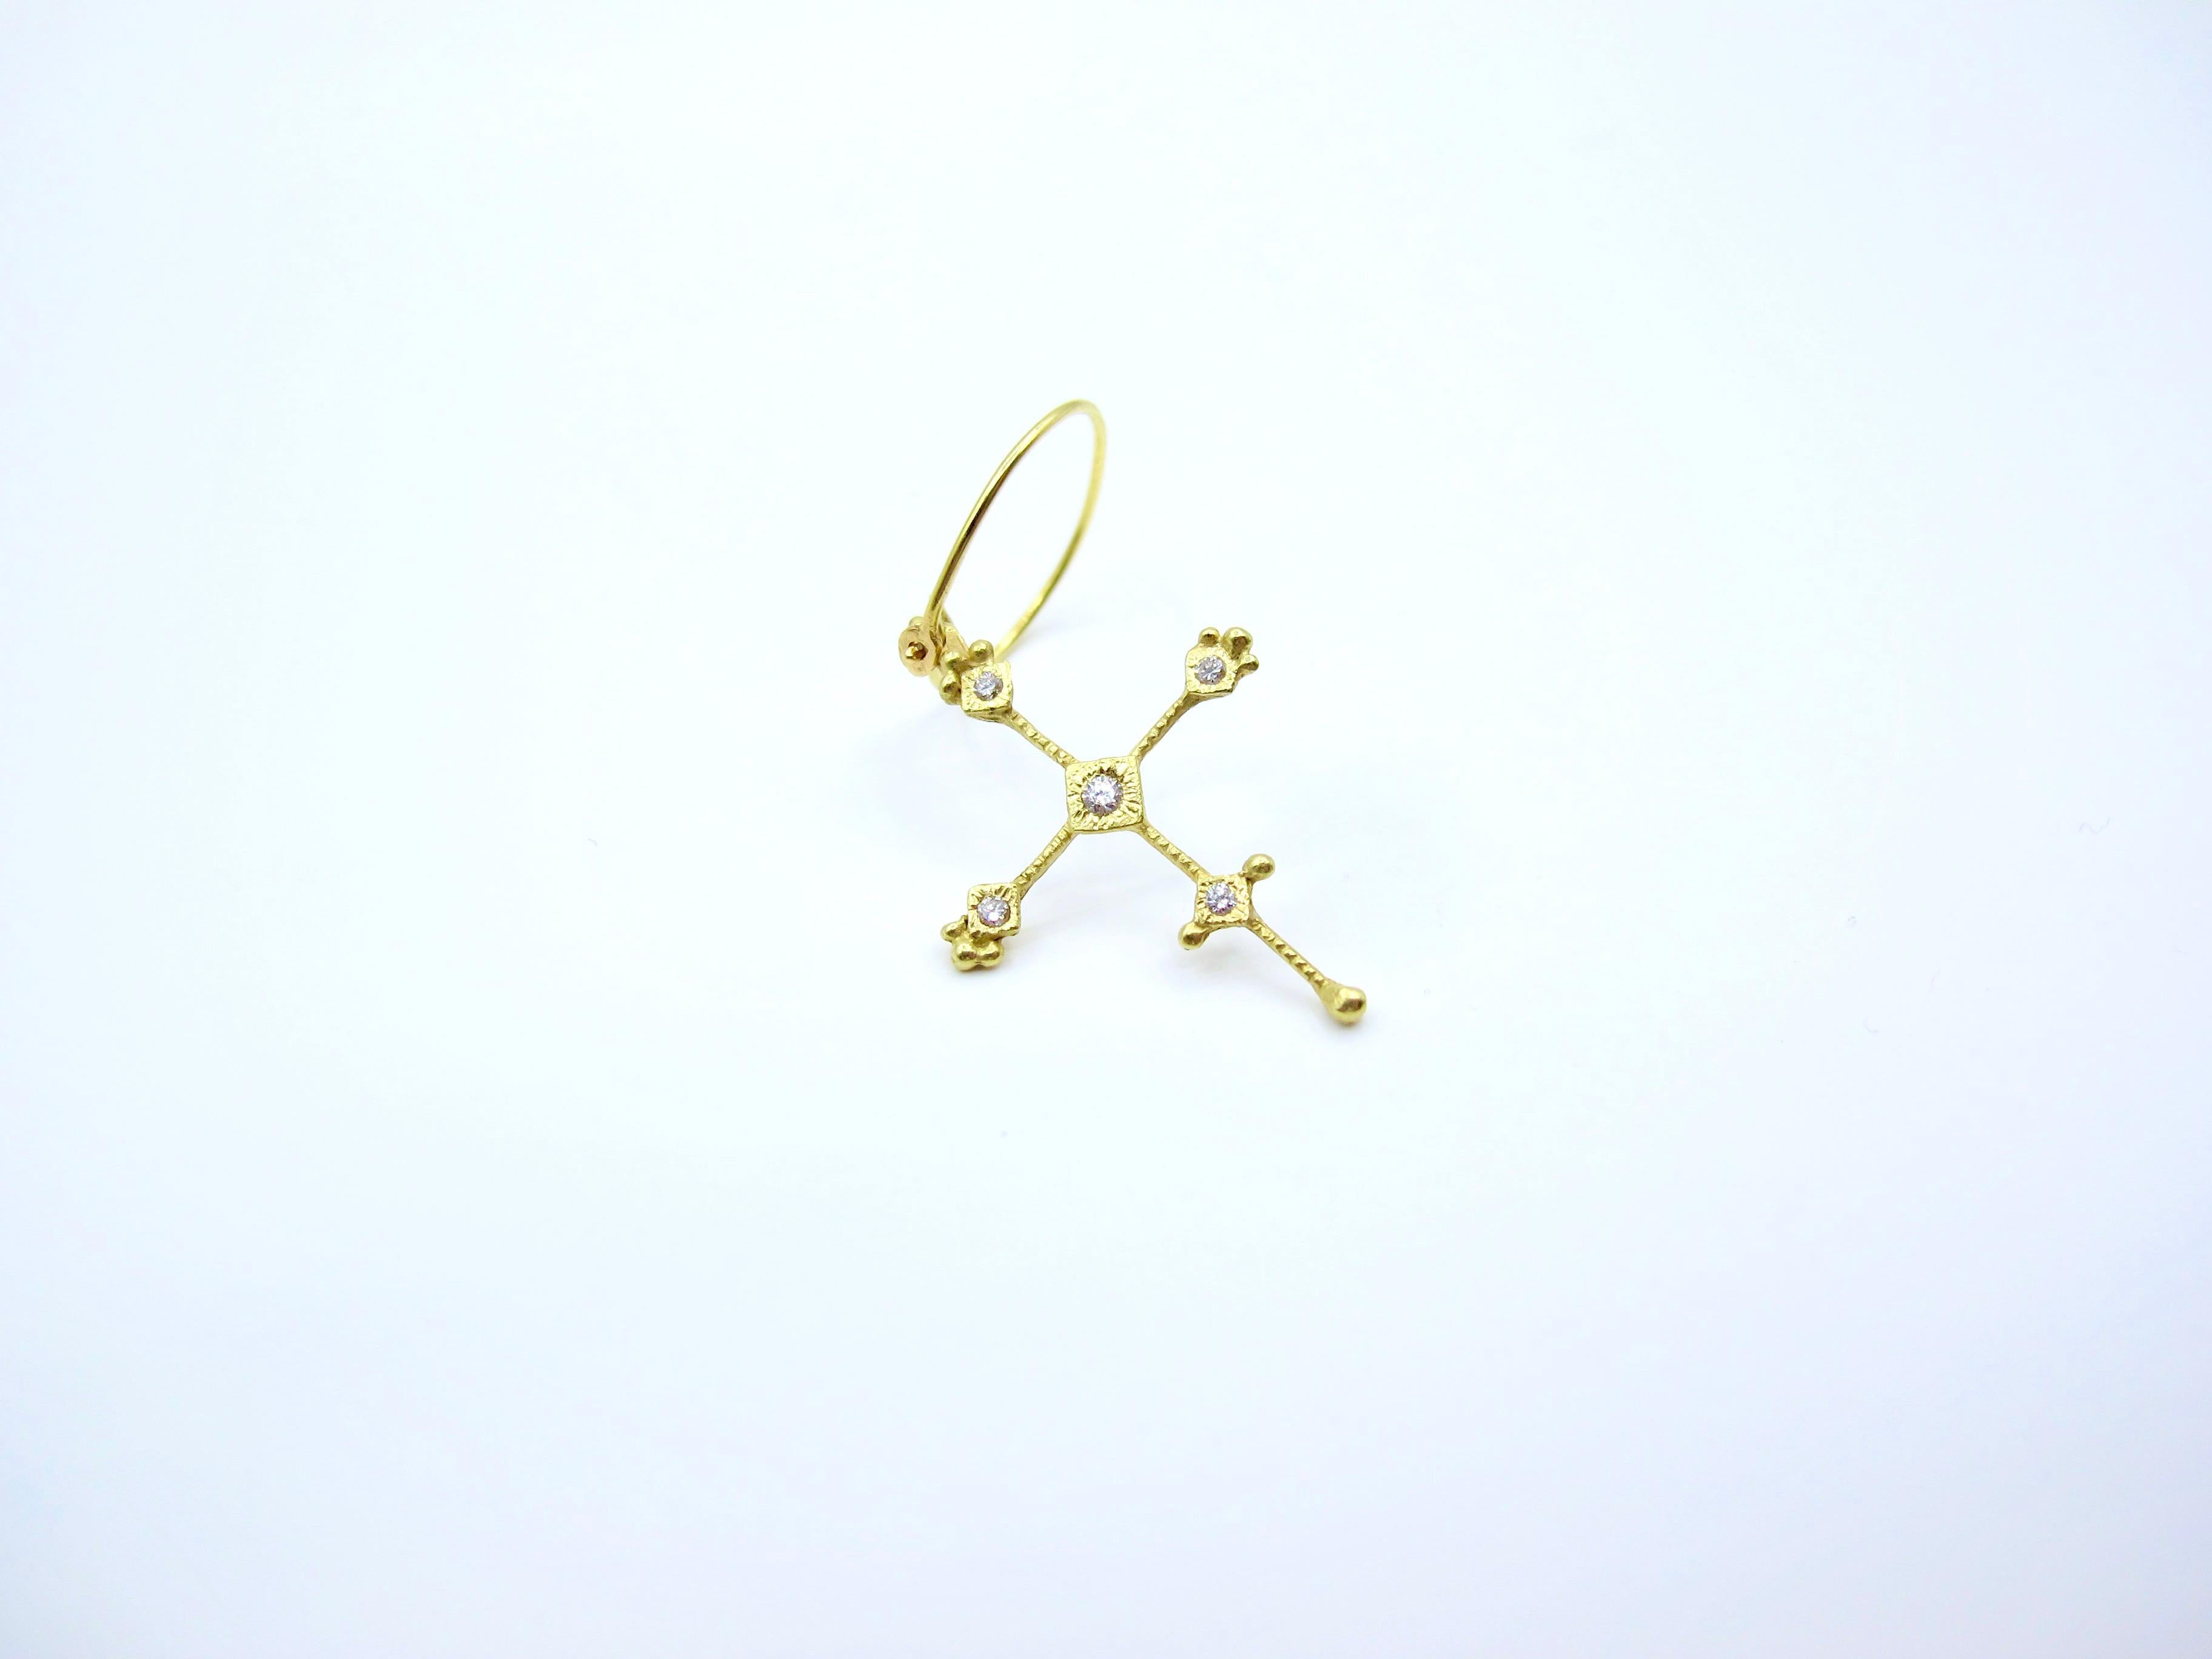 RIMA Jewels präsentiert Ihnen dieses beliebte und unglaublich zierliche Kreuz. Sie wird in Rocío Inès' Studio in Manhattan vollständig von Hand gefertigt und vereint eine Reihe von Designeinflüssen und Techniken, darunter die farbenfrohen Ojo de